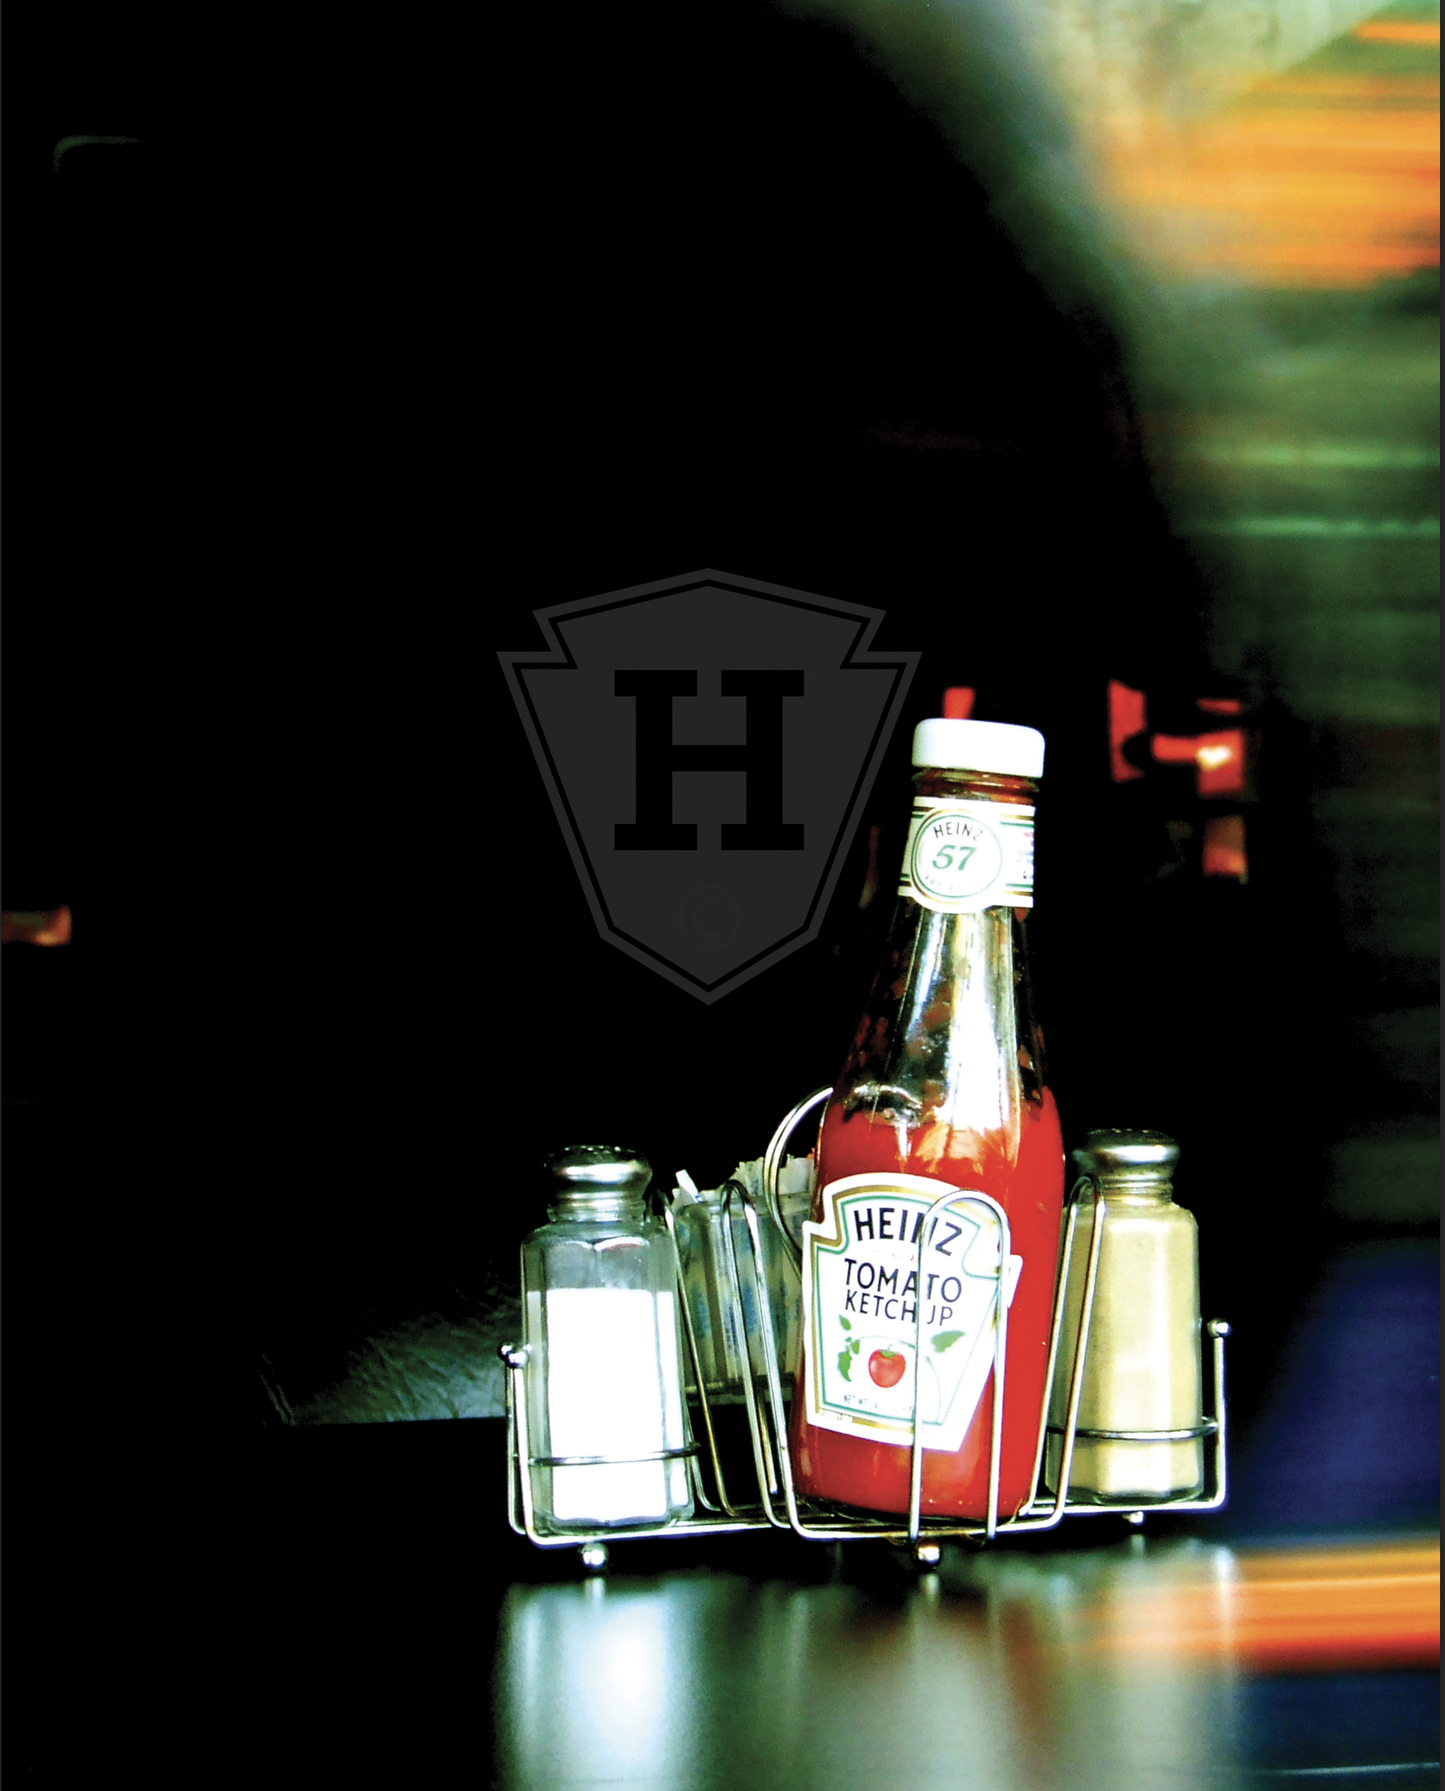 Heinz Ketchup - 8x10" Print